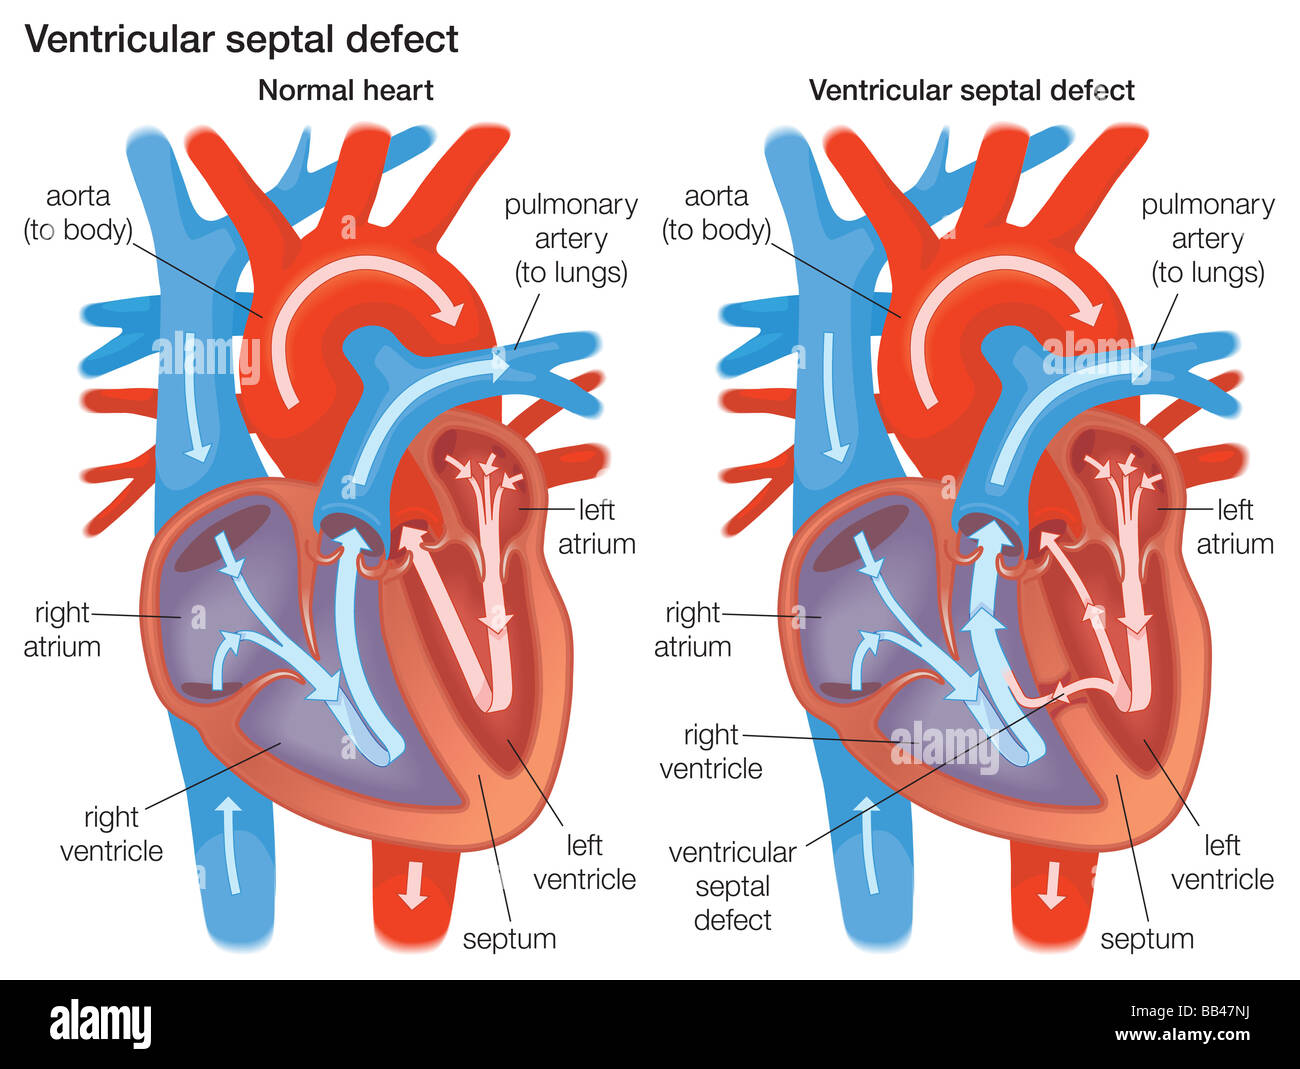 Vergleich der ein normales Herz mit einem Ventrikelseptumdefekt Stockfoto